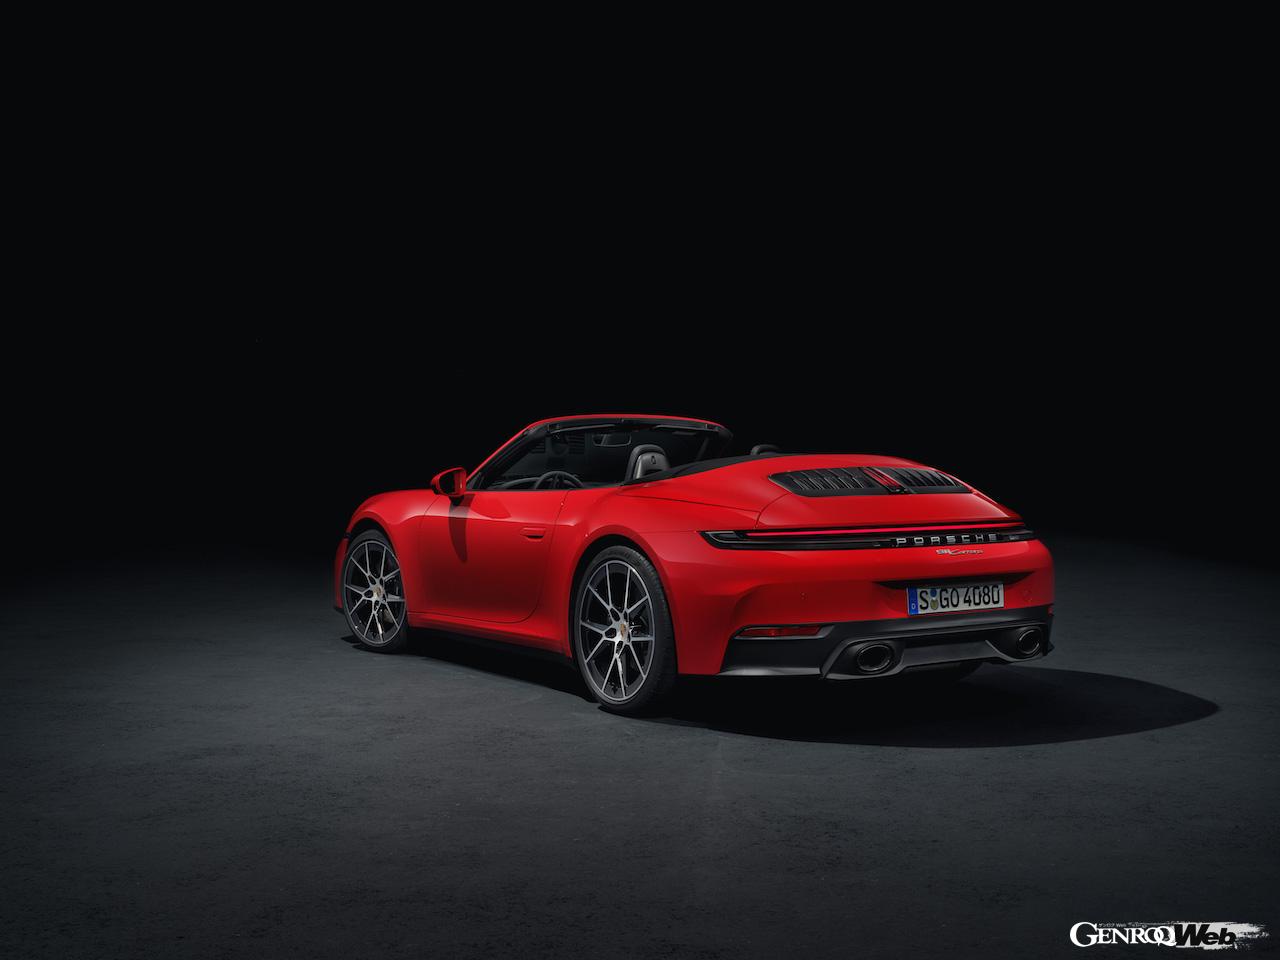 「新開発「T-ハイブリッド」を搭載した「ポルシェ 911 GTS」がデビュー「最高出力システム541PS」【動画】」の28枚めの画像